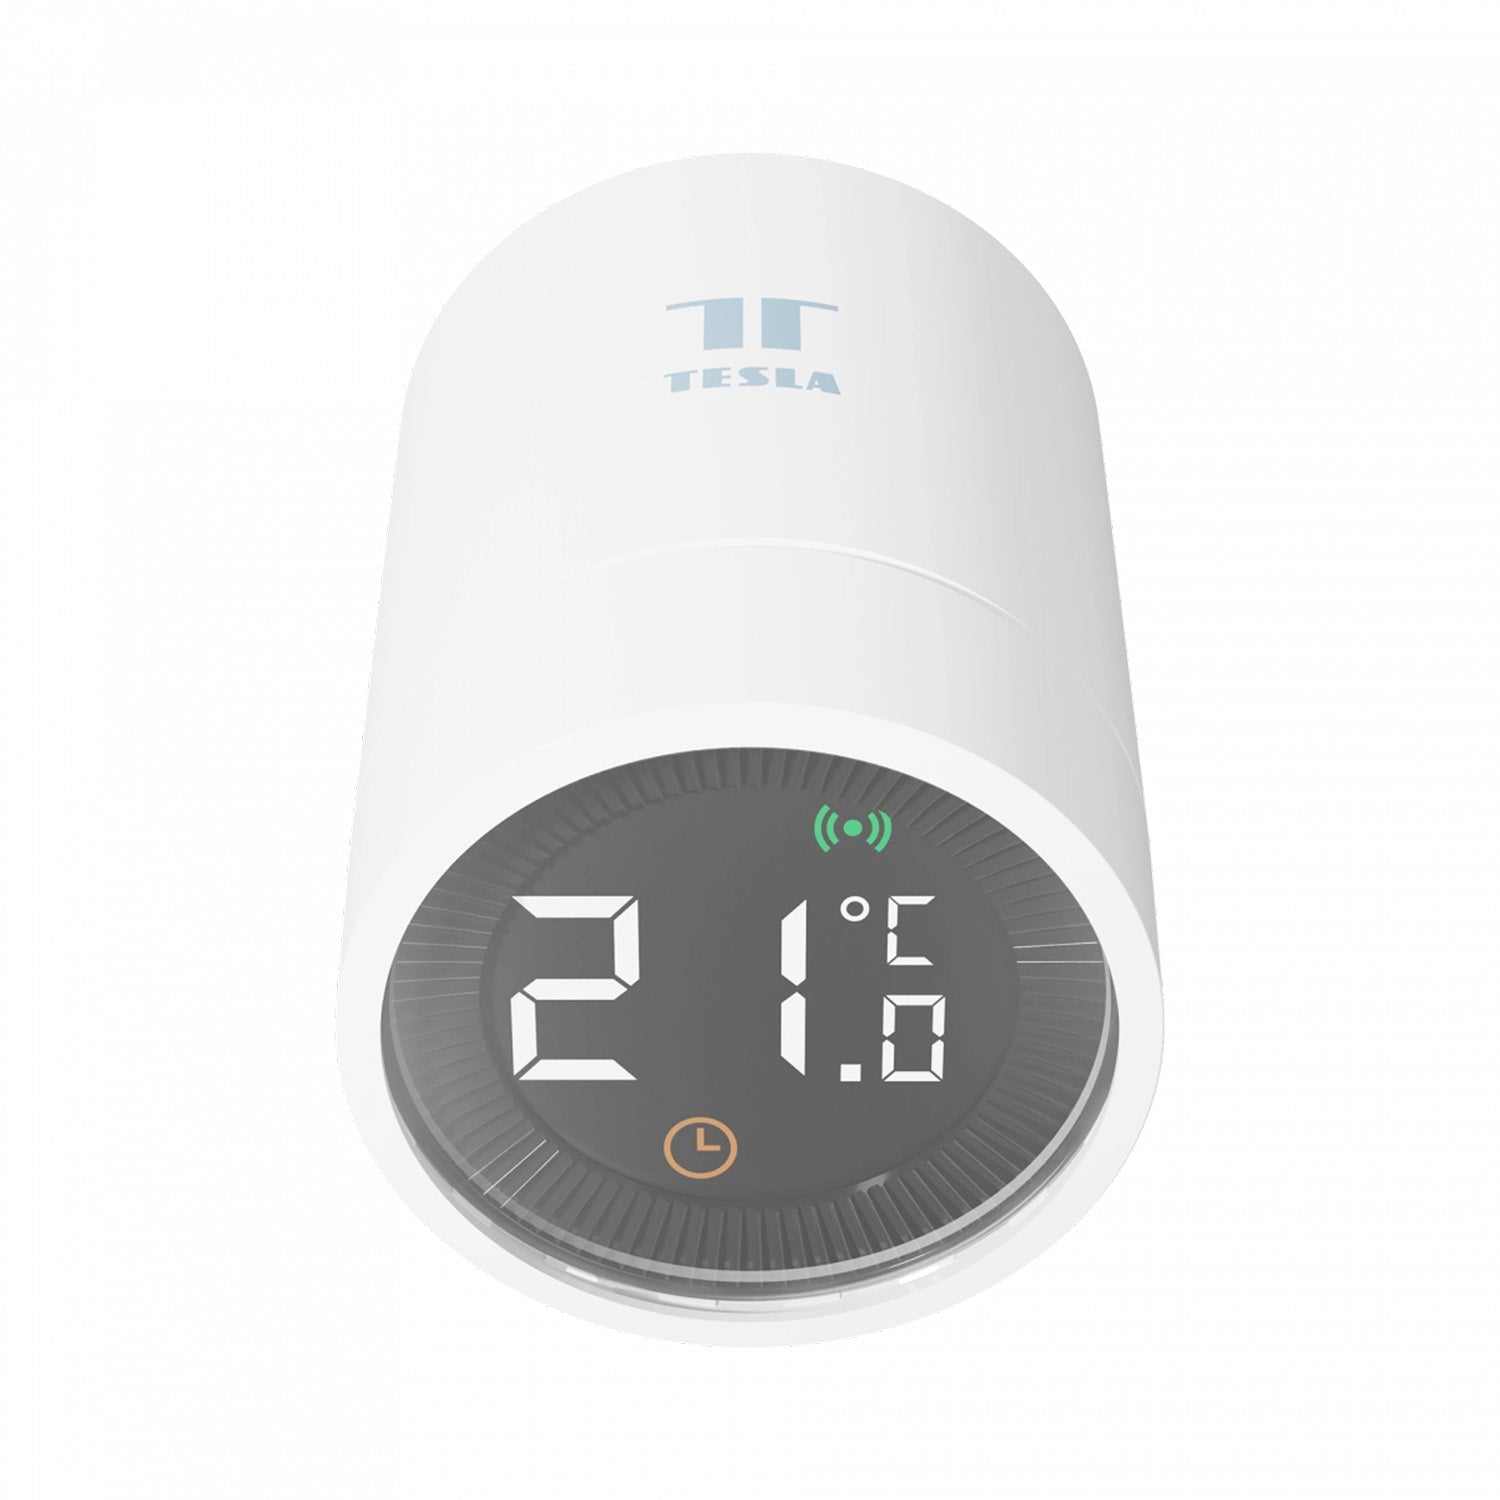 TESLA Smart Home Smart Thermostatic Valve Style Zigbee